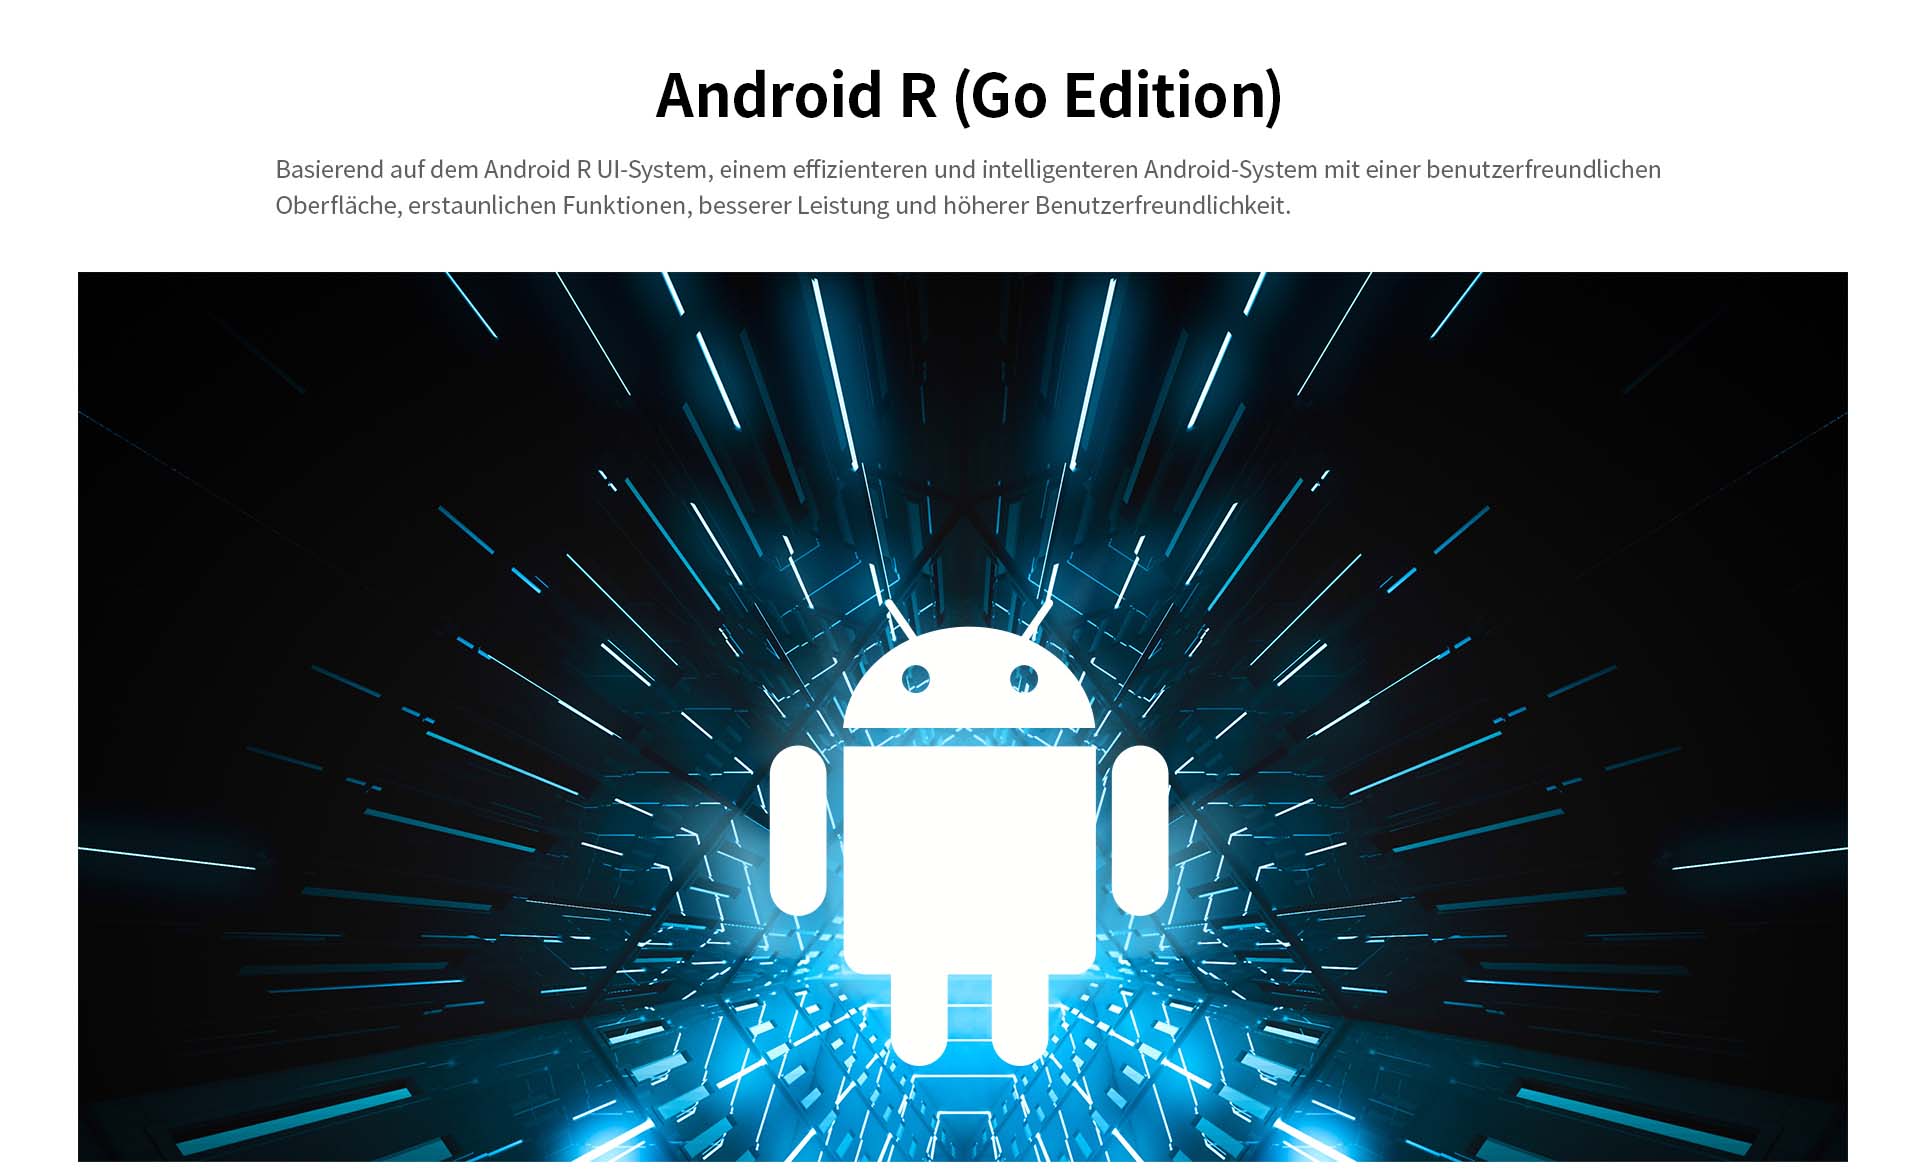 ZTE Blade A31 mit Android 11 (Go Edition) - Basierend auf dem Android 11 UI-System, einem effizienten und intelligeren Android-System mit einer benutzerfreundlichen Oberfläche, erstaunlichen Funktionen, besserer Leistung und höherer Benutzerfreundlichkeit.